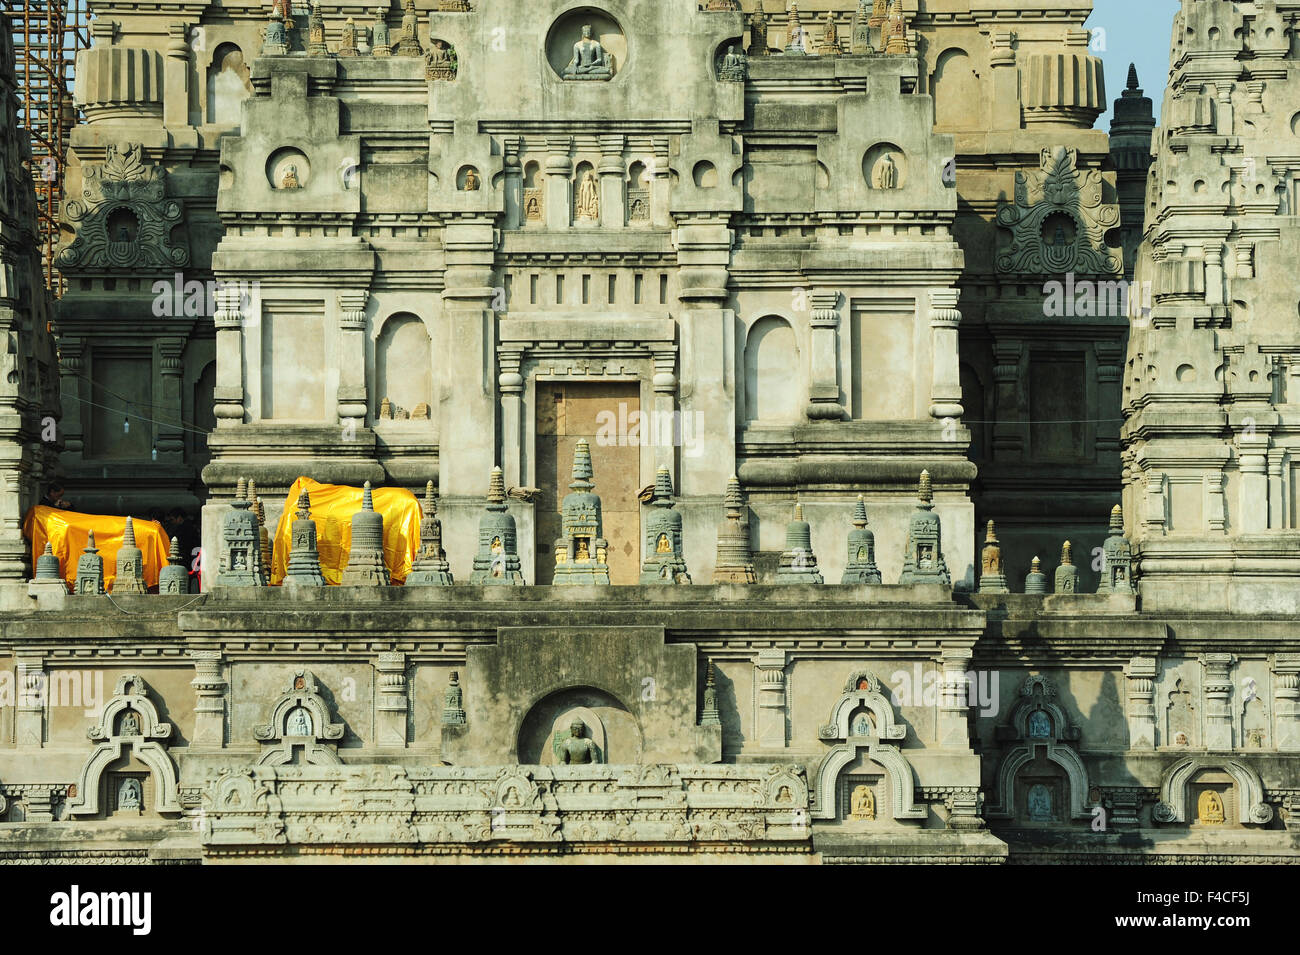 India, Bihar, Bodh Gaya, Sito Patrimonio Mondiale dell'UNESCO, il complesso del tempio di Mahabodhi (risveglio grande tempio), tempio buddista dove Siddharta Gautama, il Buddha, raggiunto l'illuminazione Foto Stock